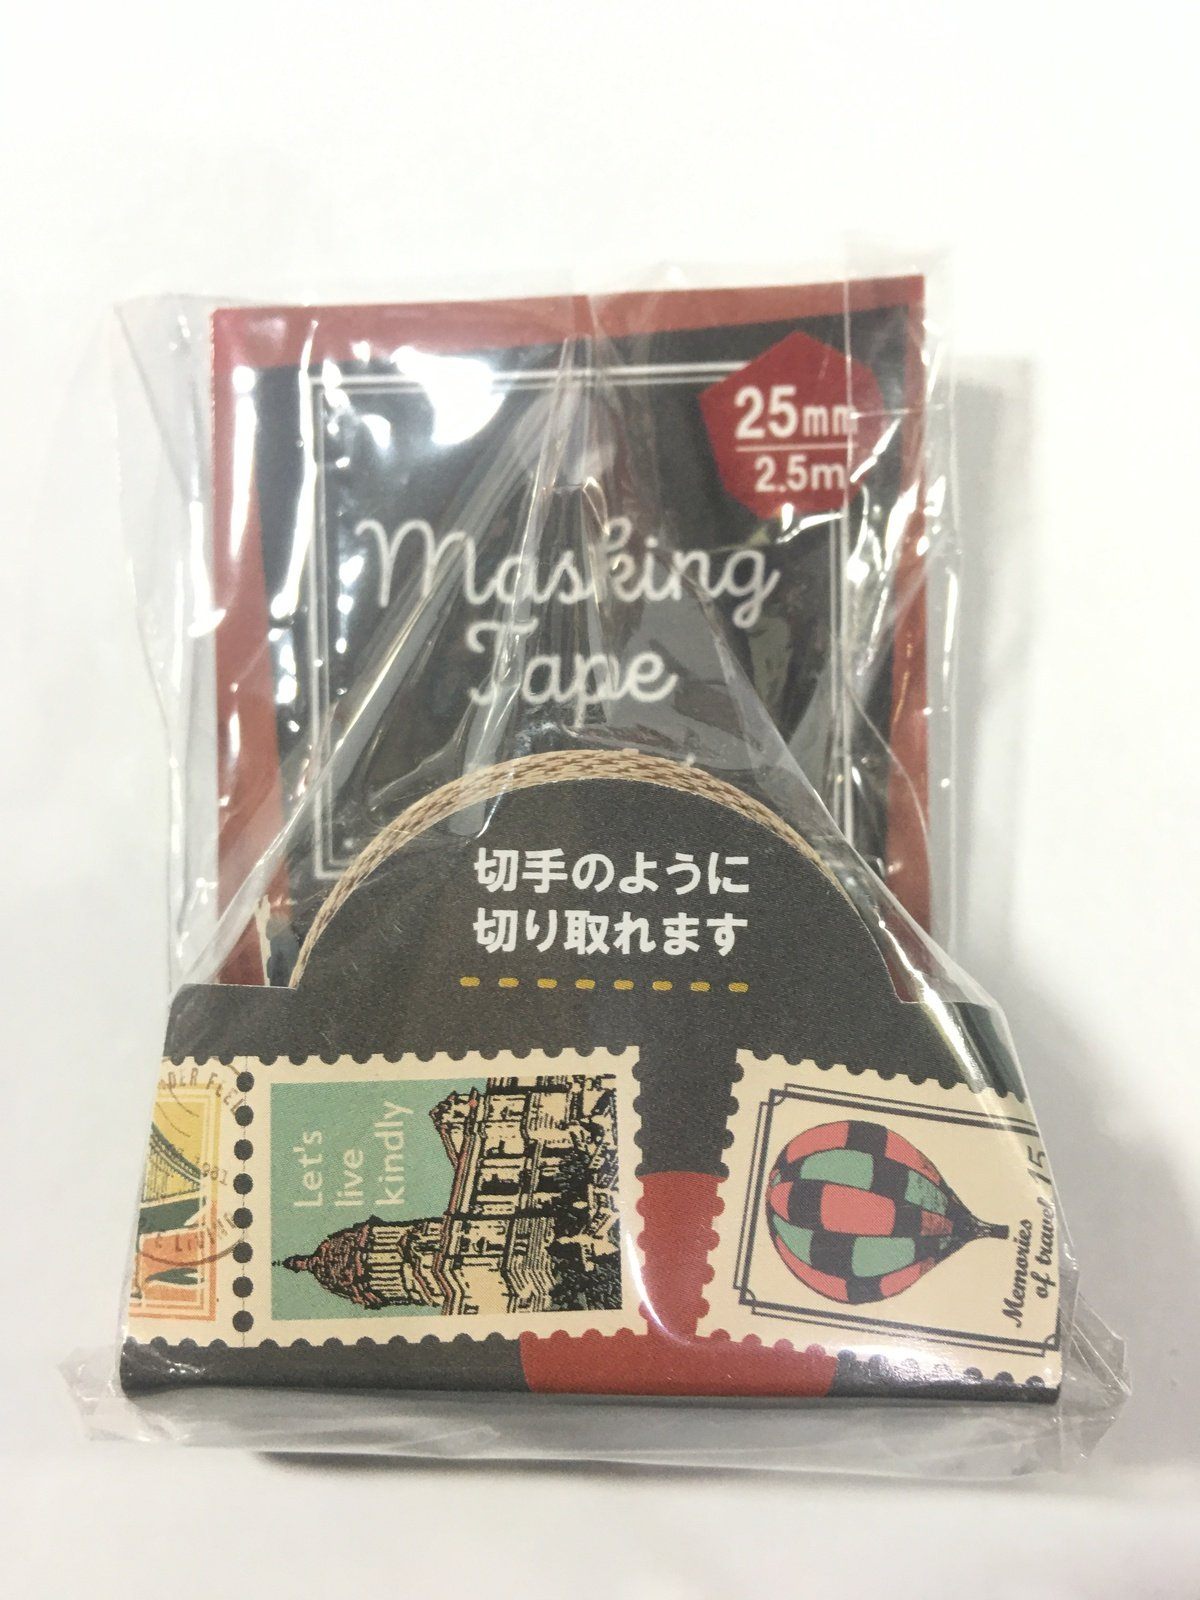 Masking Tape - Vintage Stamps